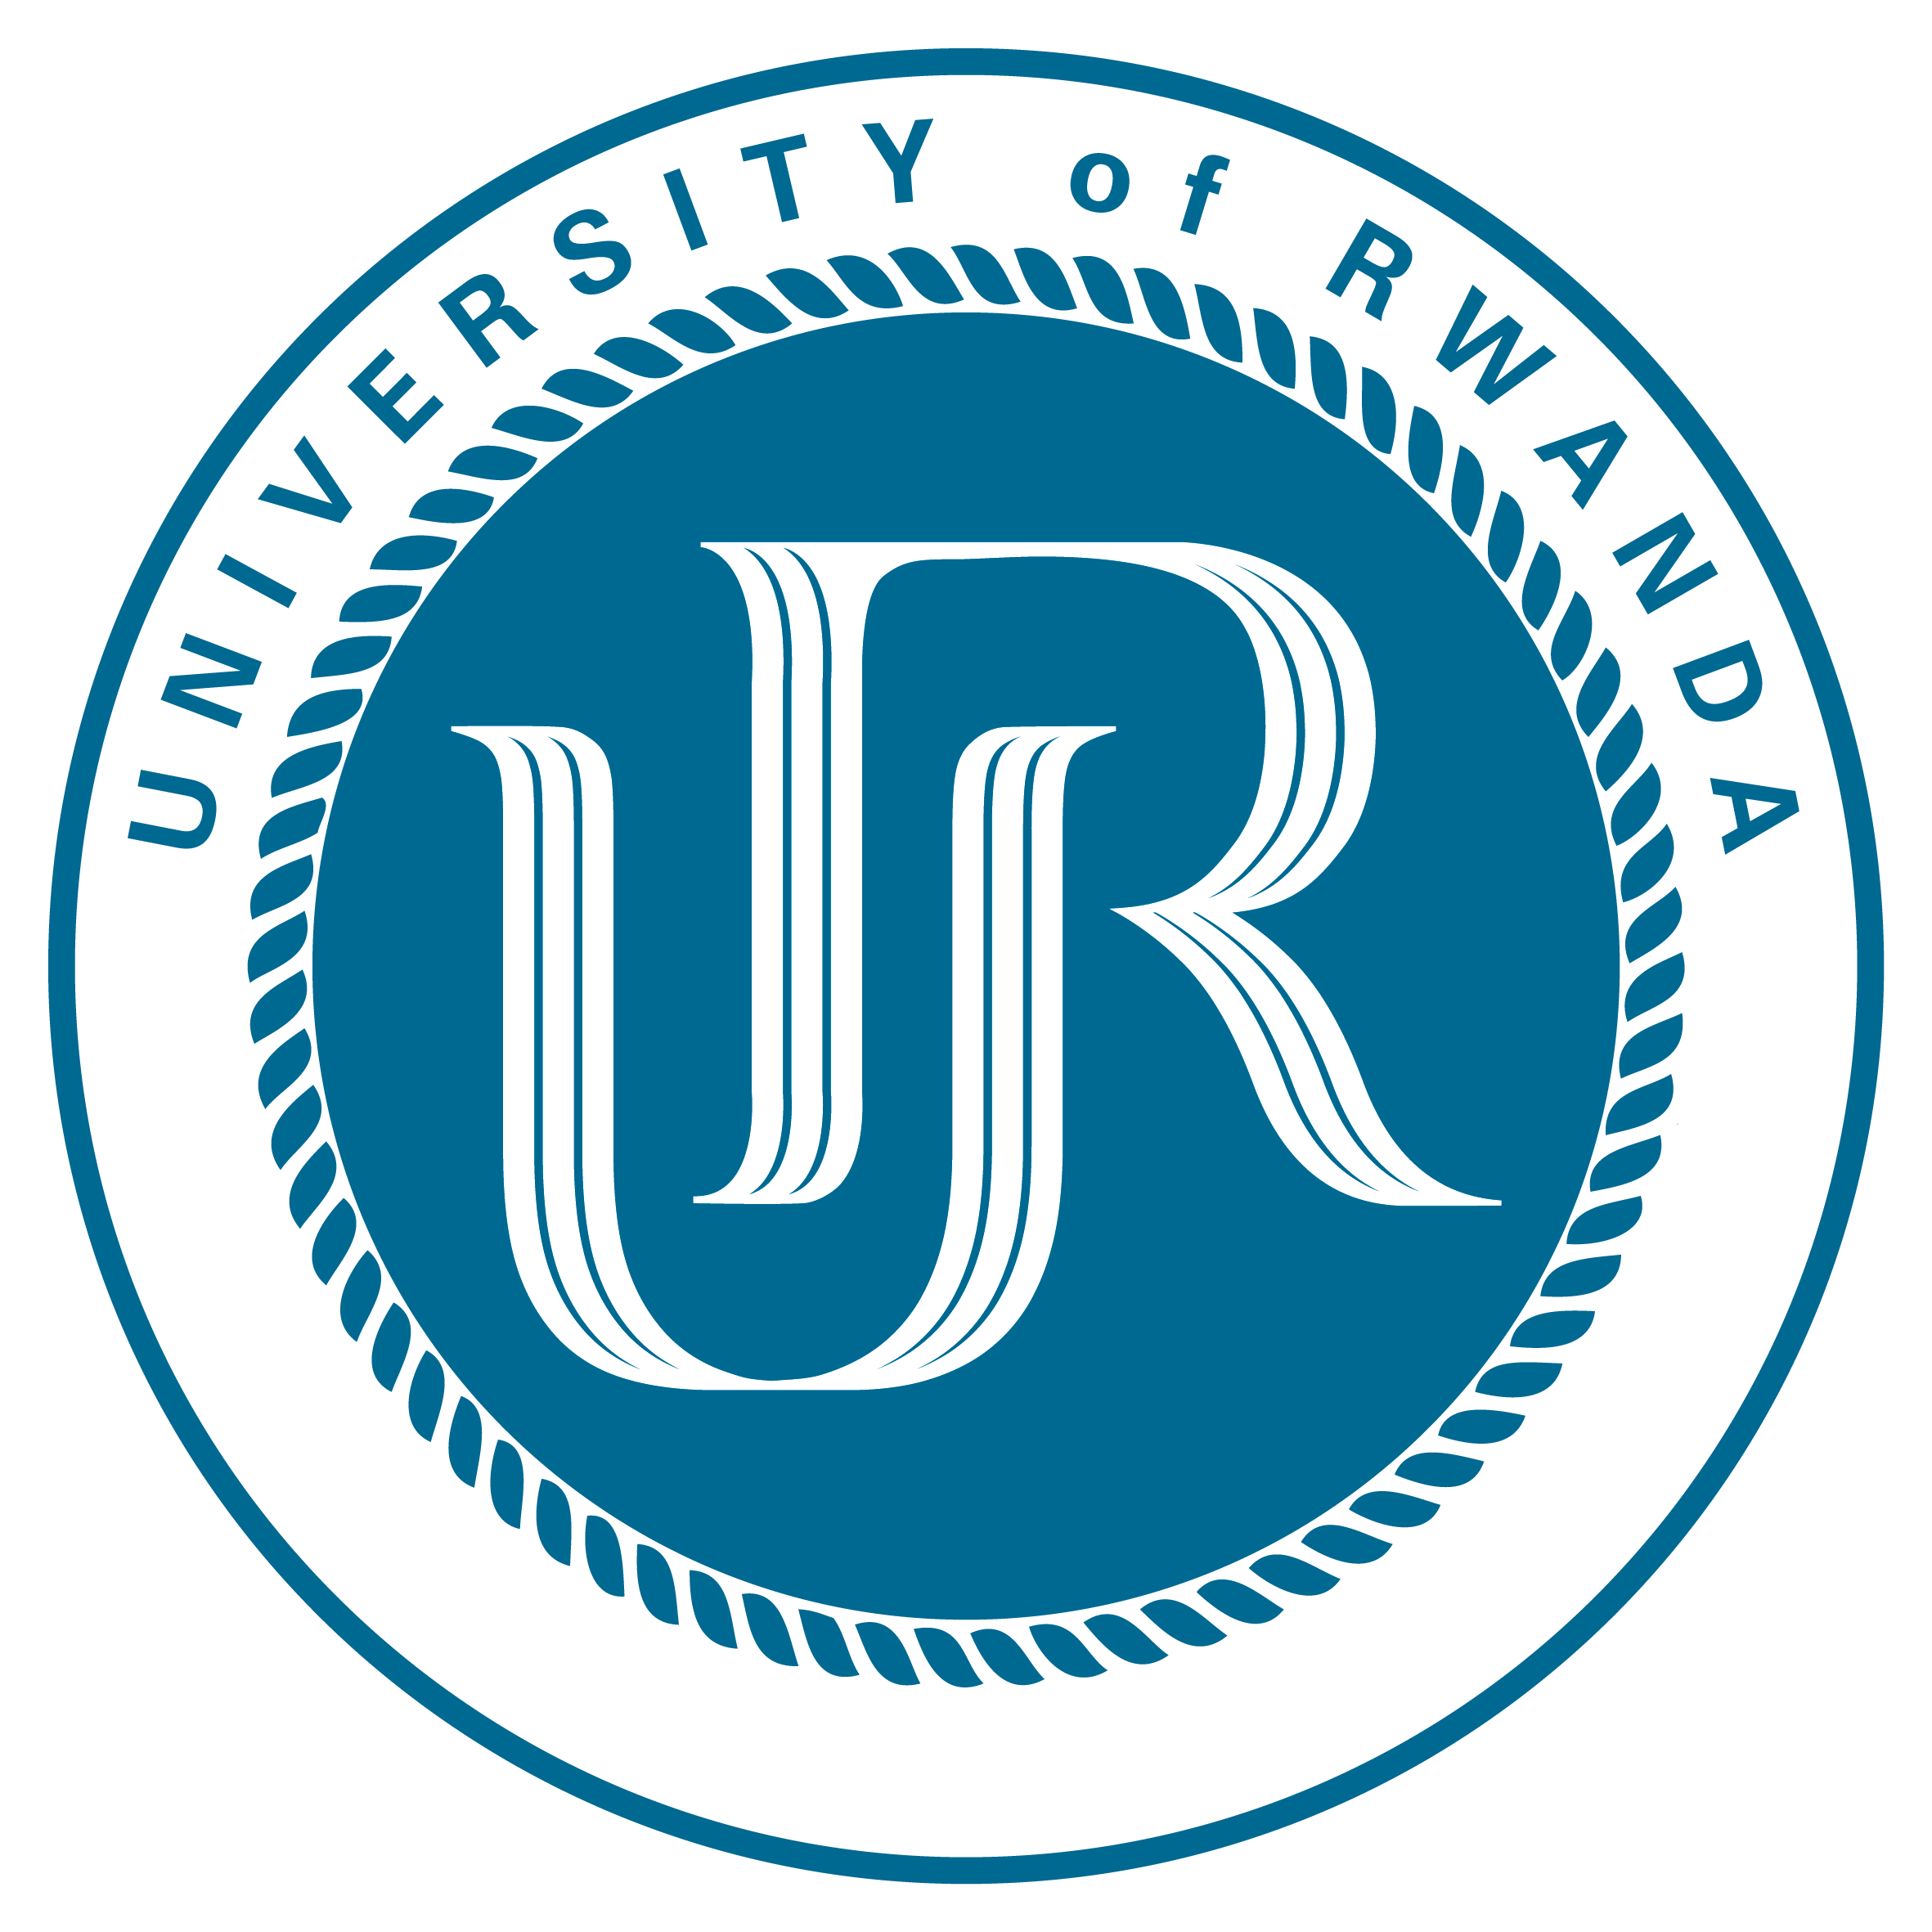 University of Rwanda LOGO B RV